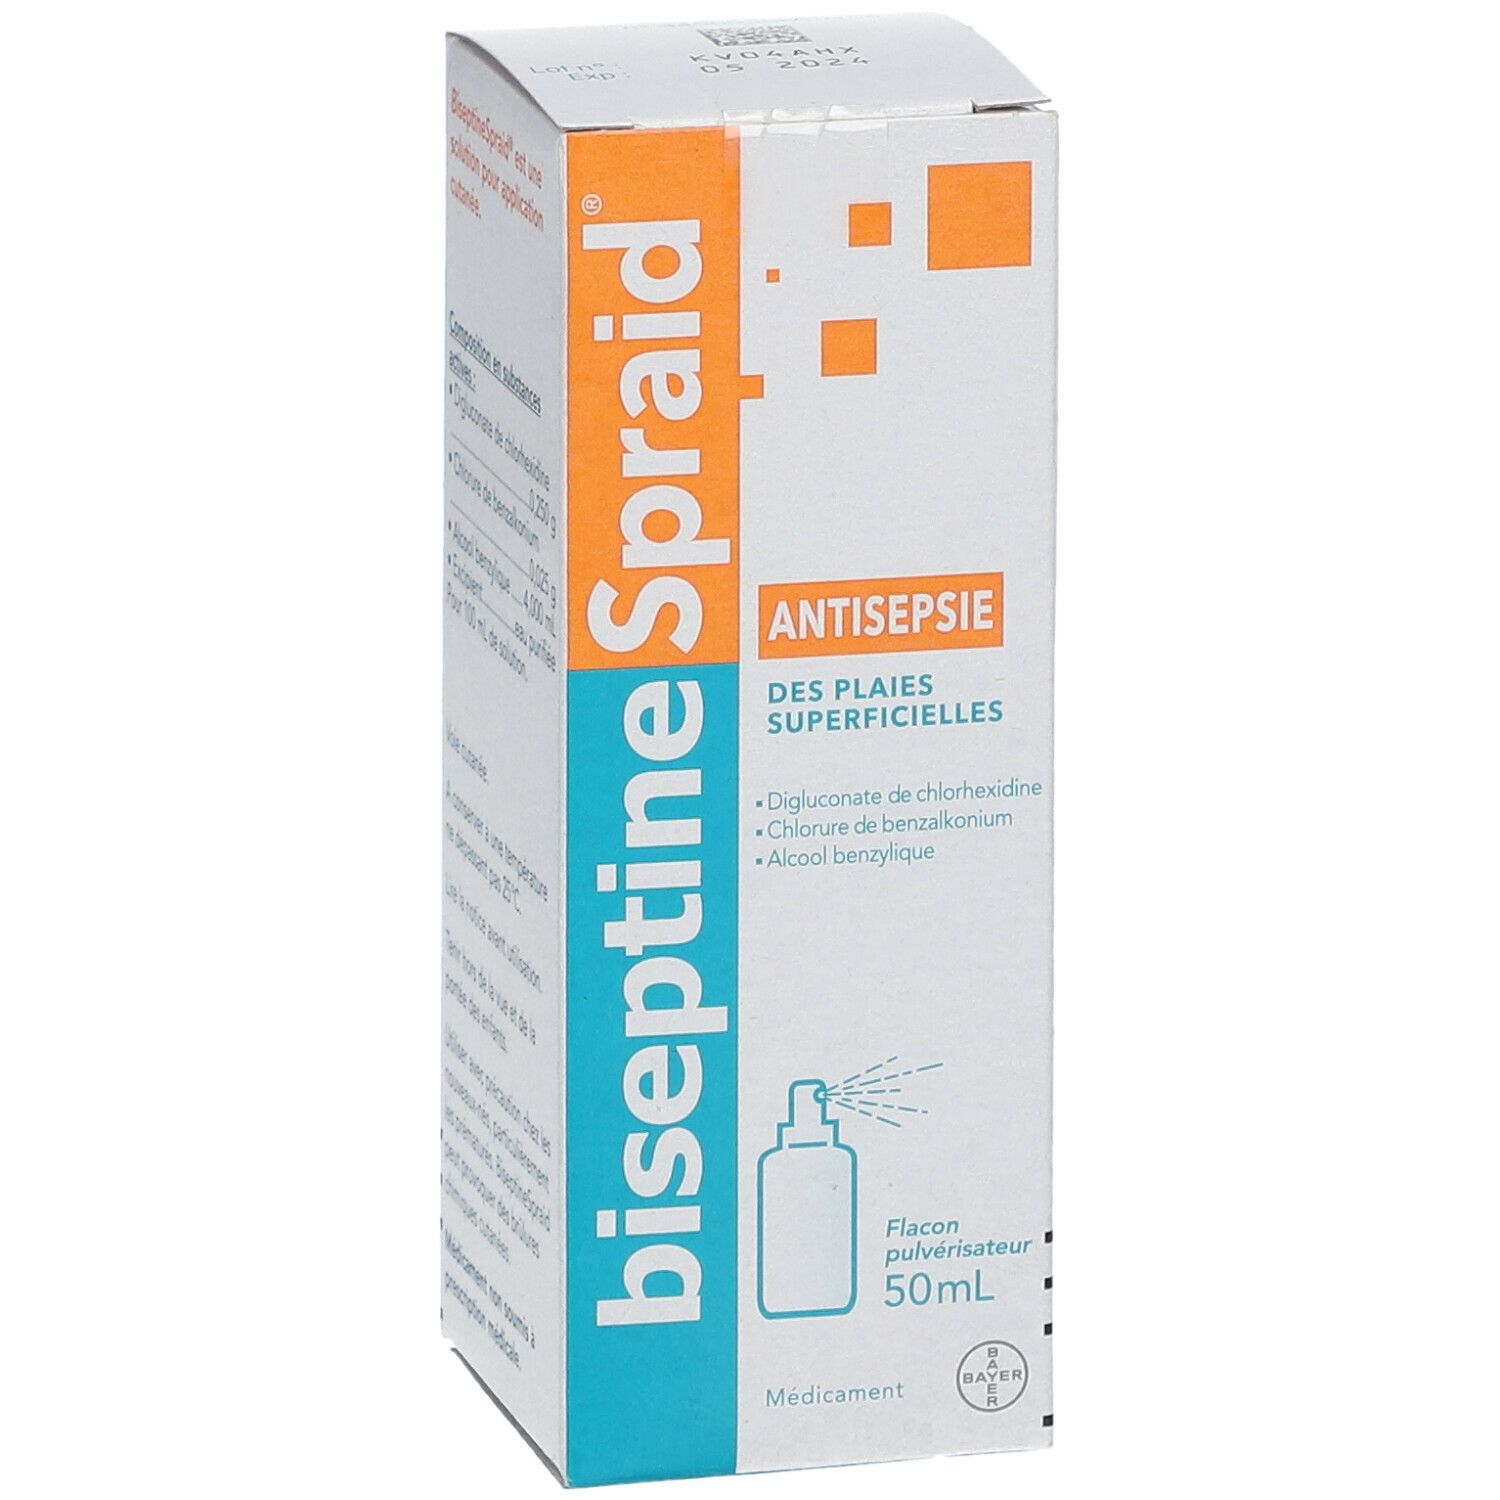 BiseptineSpraid Pulvérisateur - 125ml + godet - Pharmacie en ligne